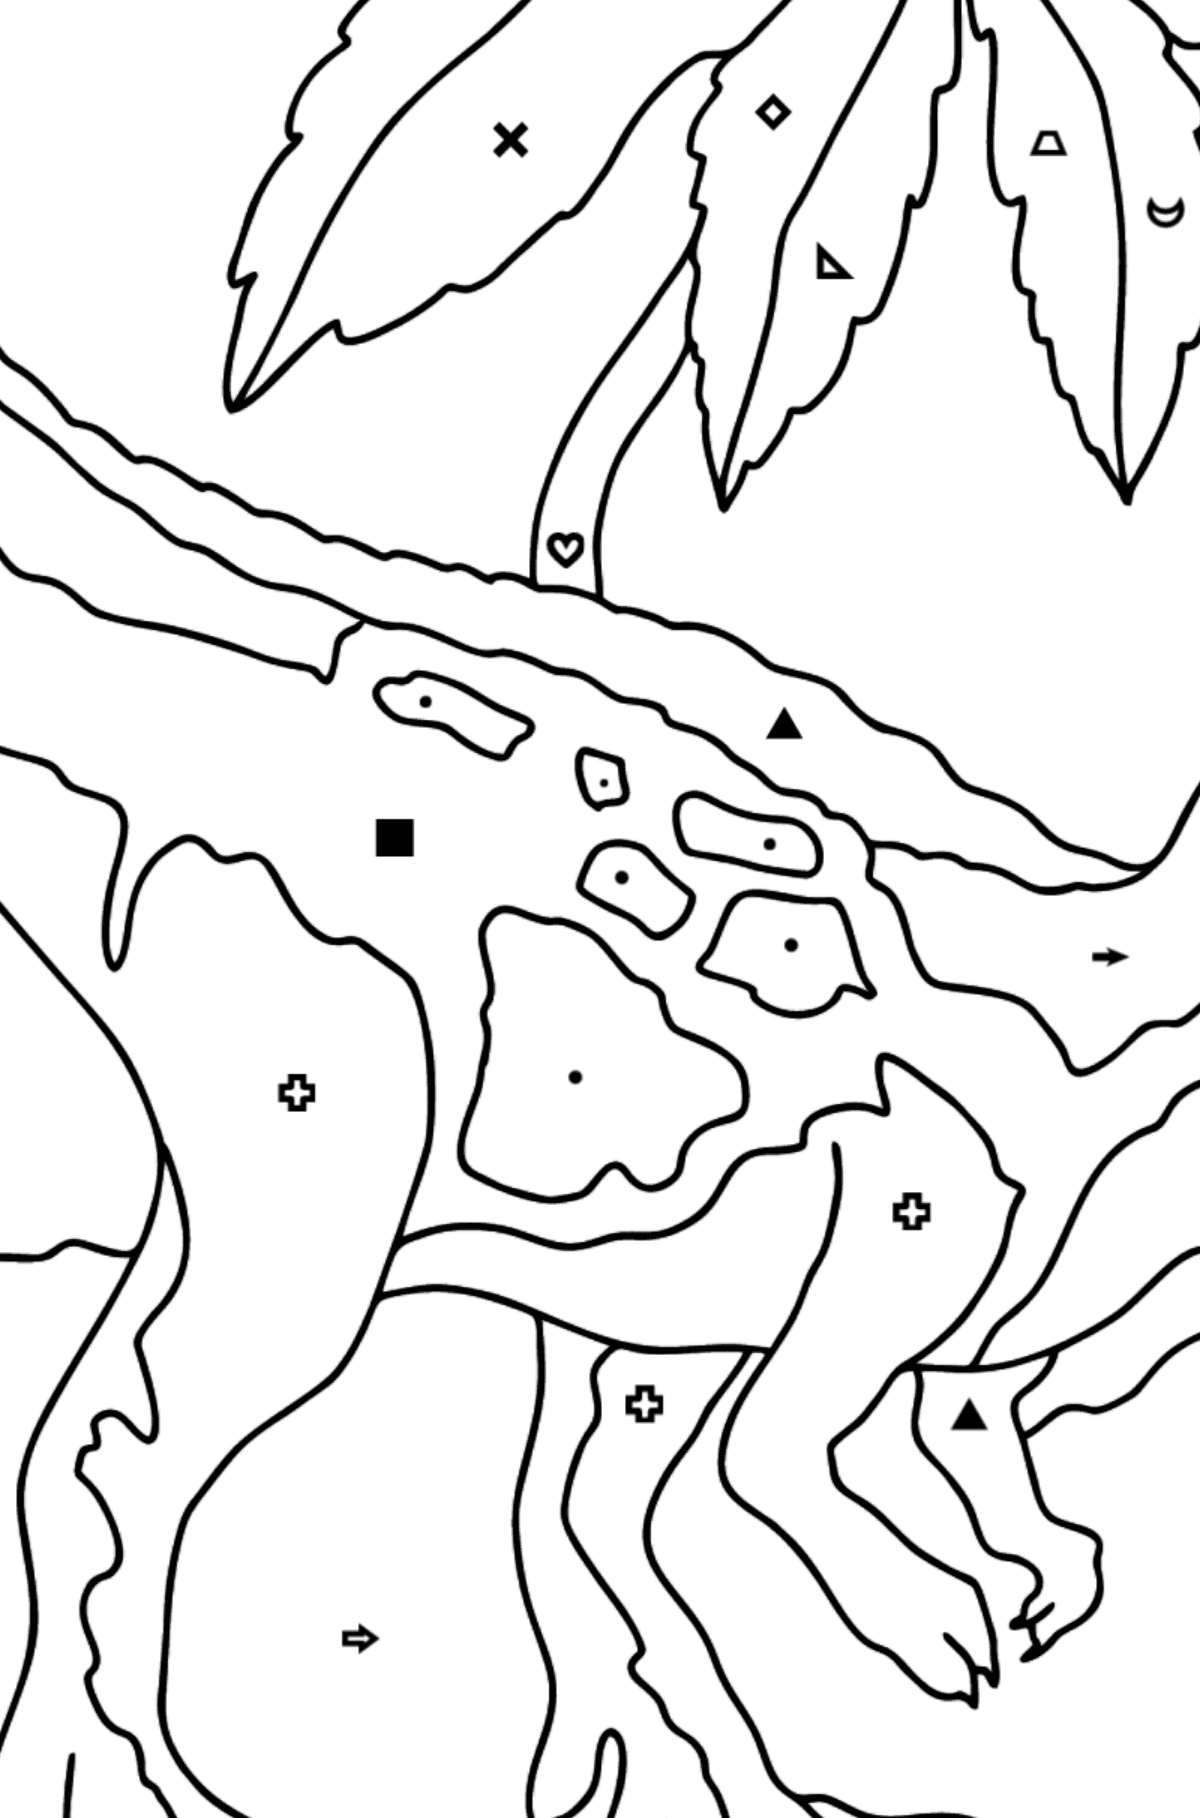 Tyrannosaurus Predator Coloring Page (difícil) - Colorear por Símbolos para Niños